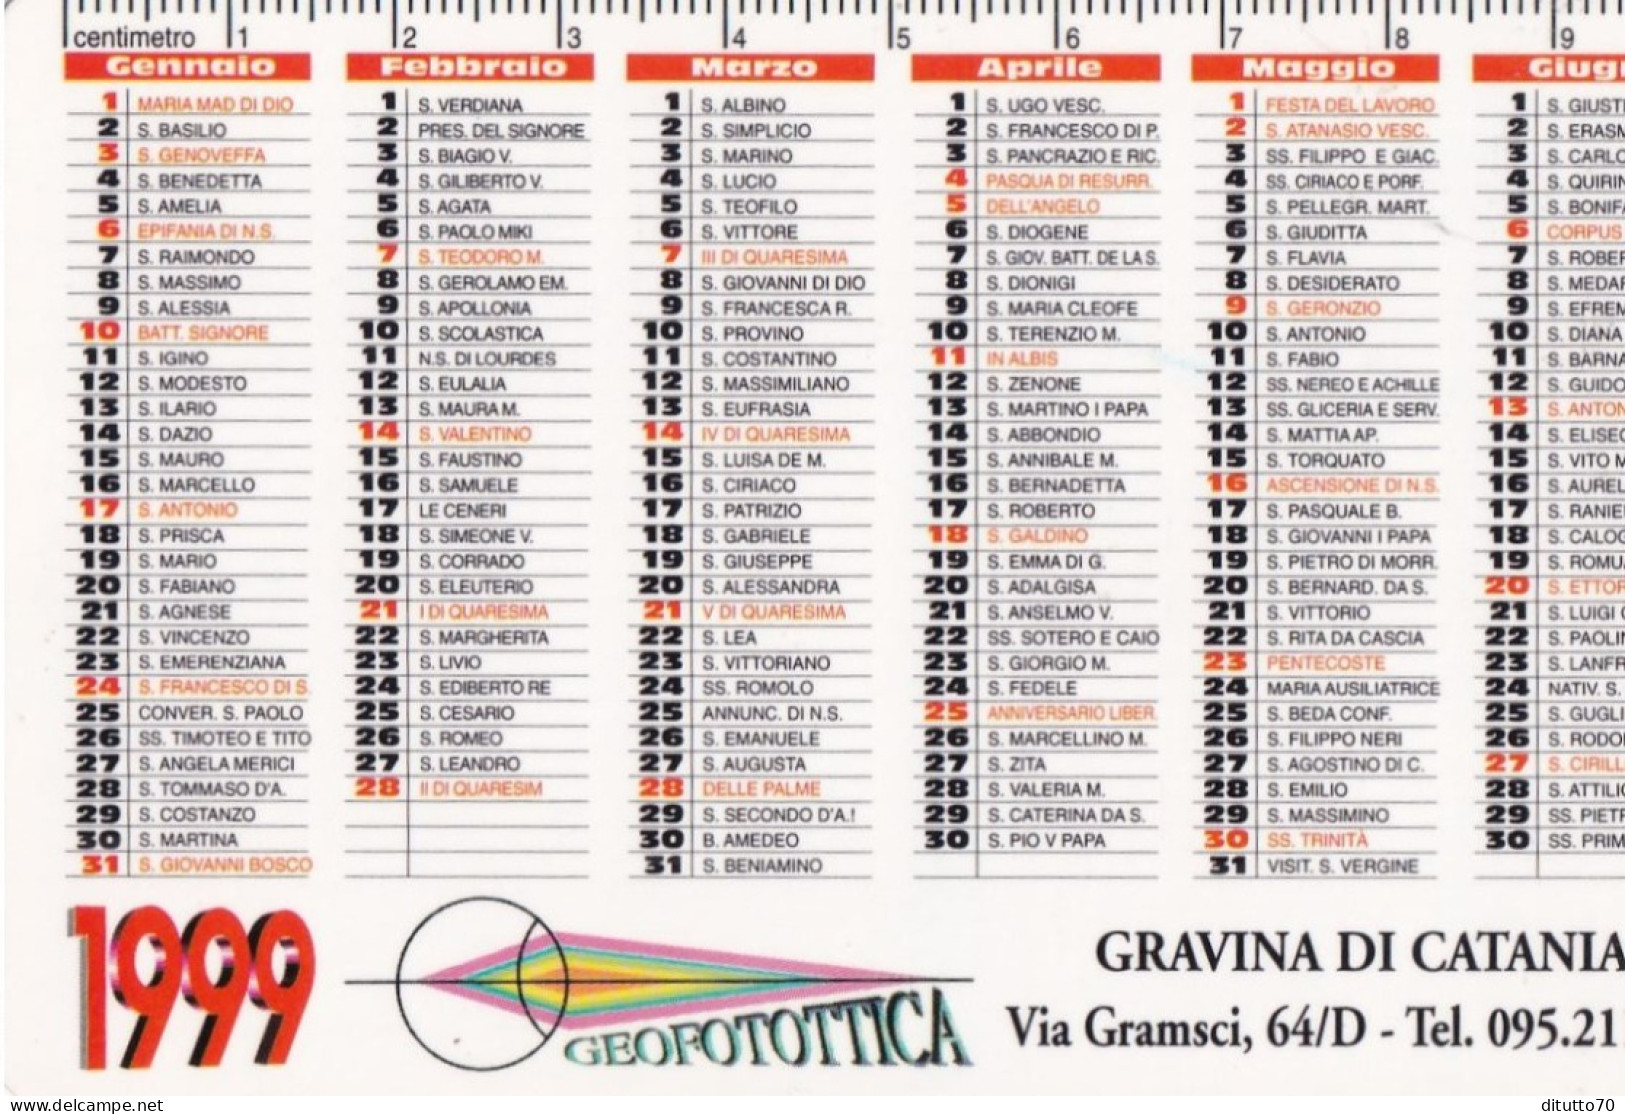 Calendarietto - Geofotottica - Gravina Di Catania - Anno 1999 - Kleinformat : 1991-00